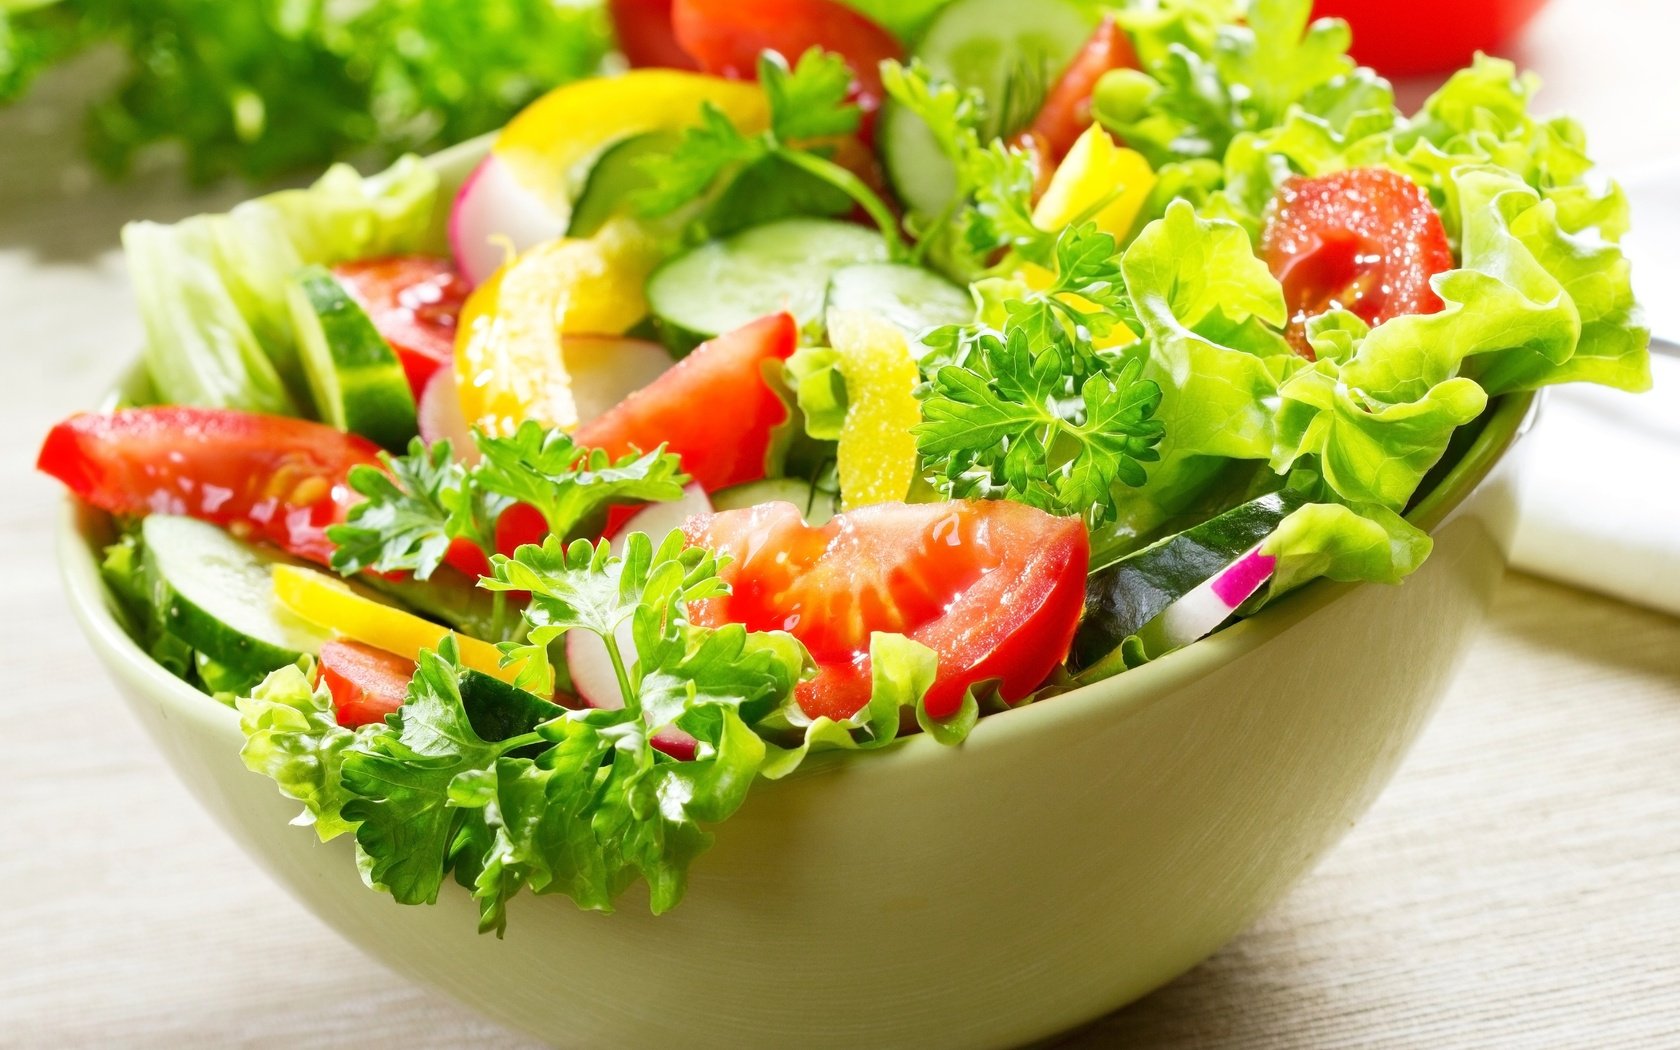 Vì sao giảm cân luôn “gắn liền” với salad?